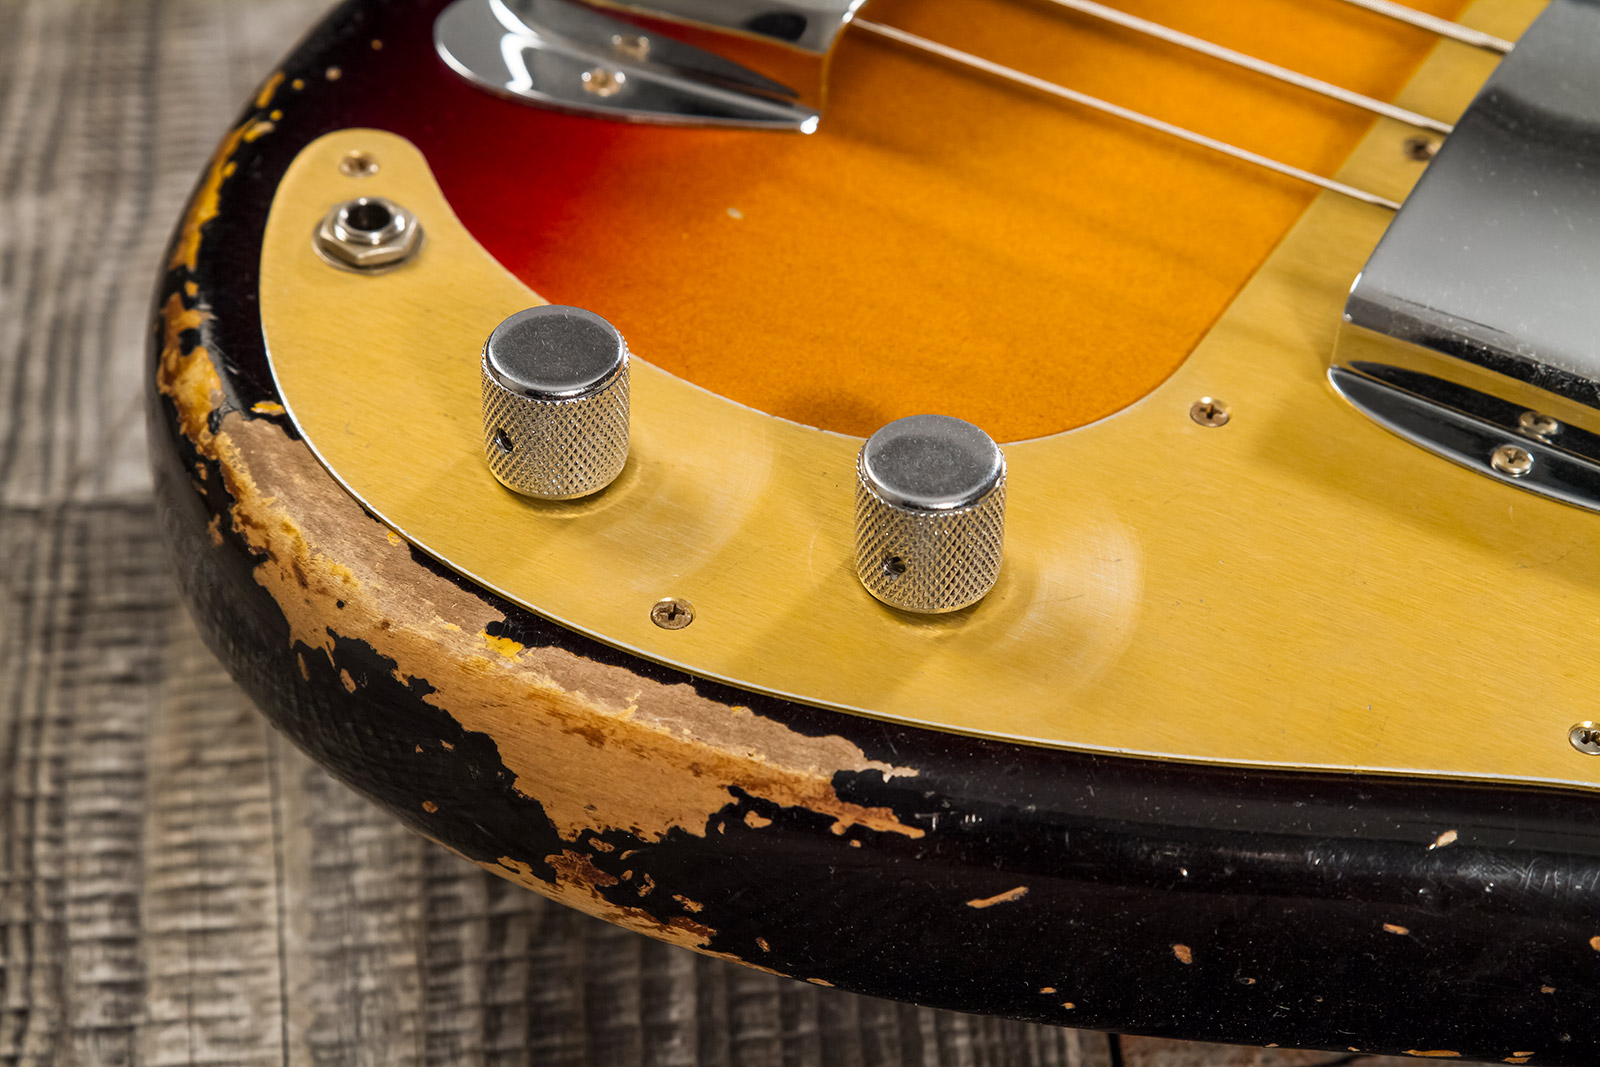 Fender Custom Shop Precision Bass 1958 Mn #cz573256 - Heavy Relic 3-color Sunburst - Solidbody E-bass - Variation 3